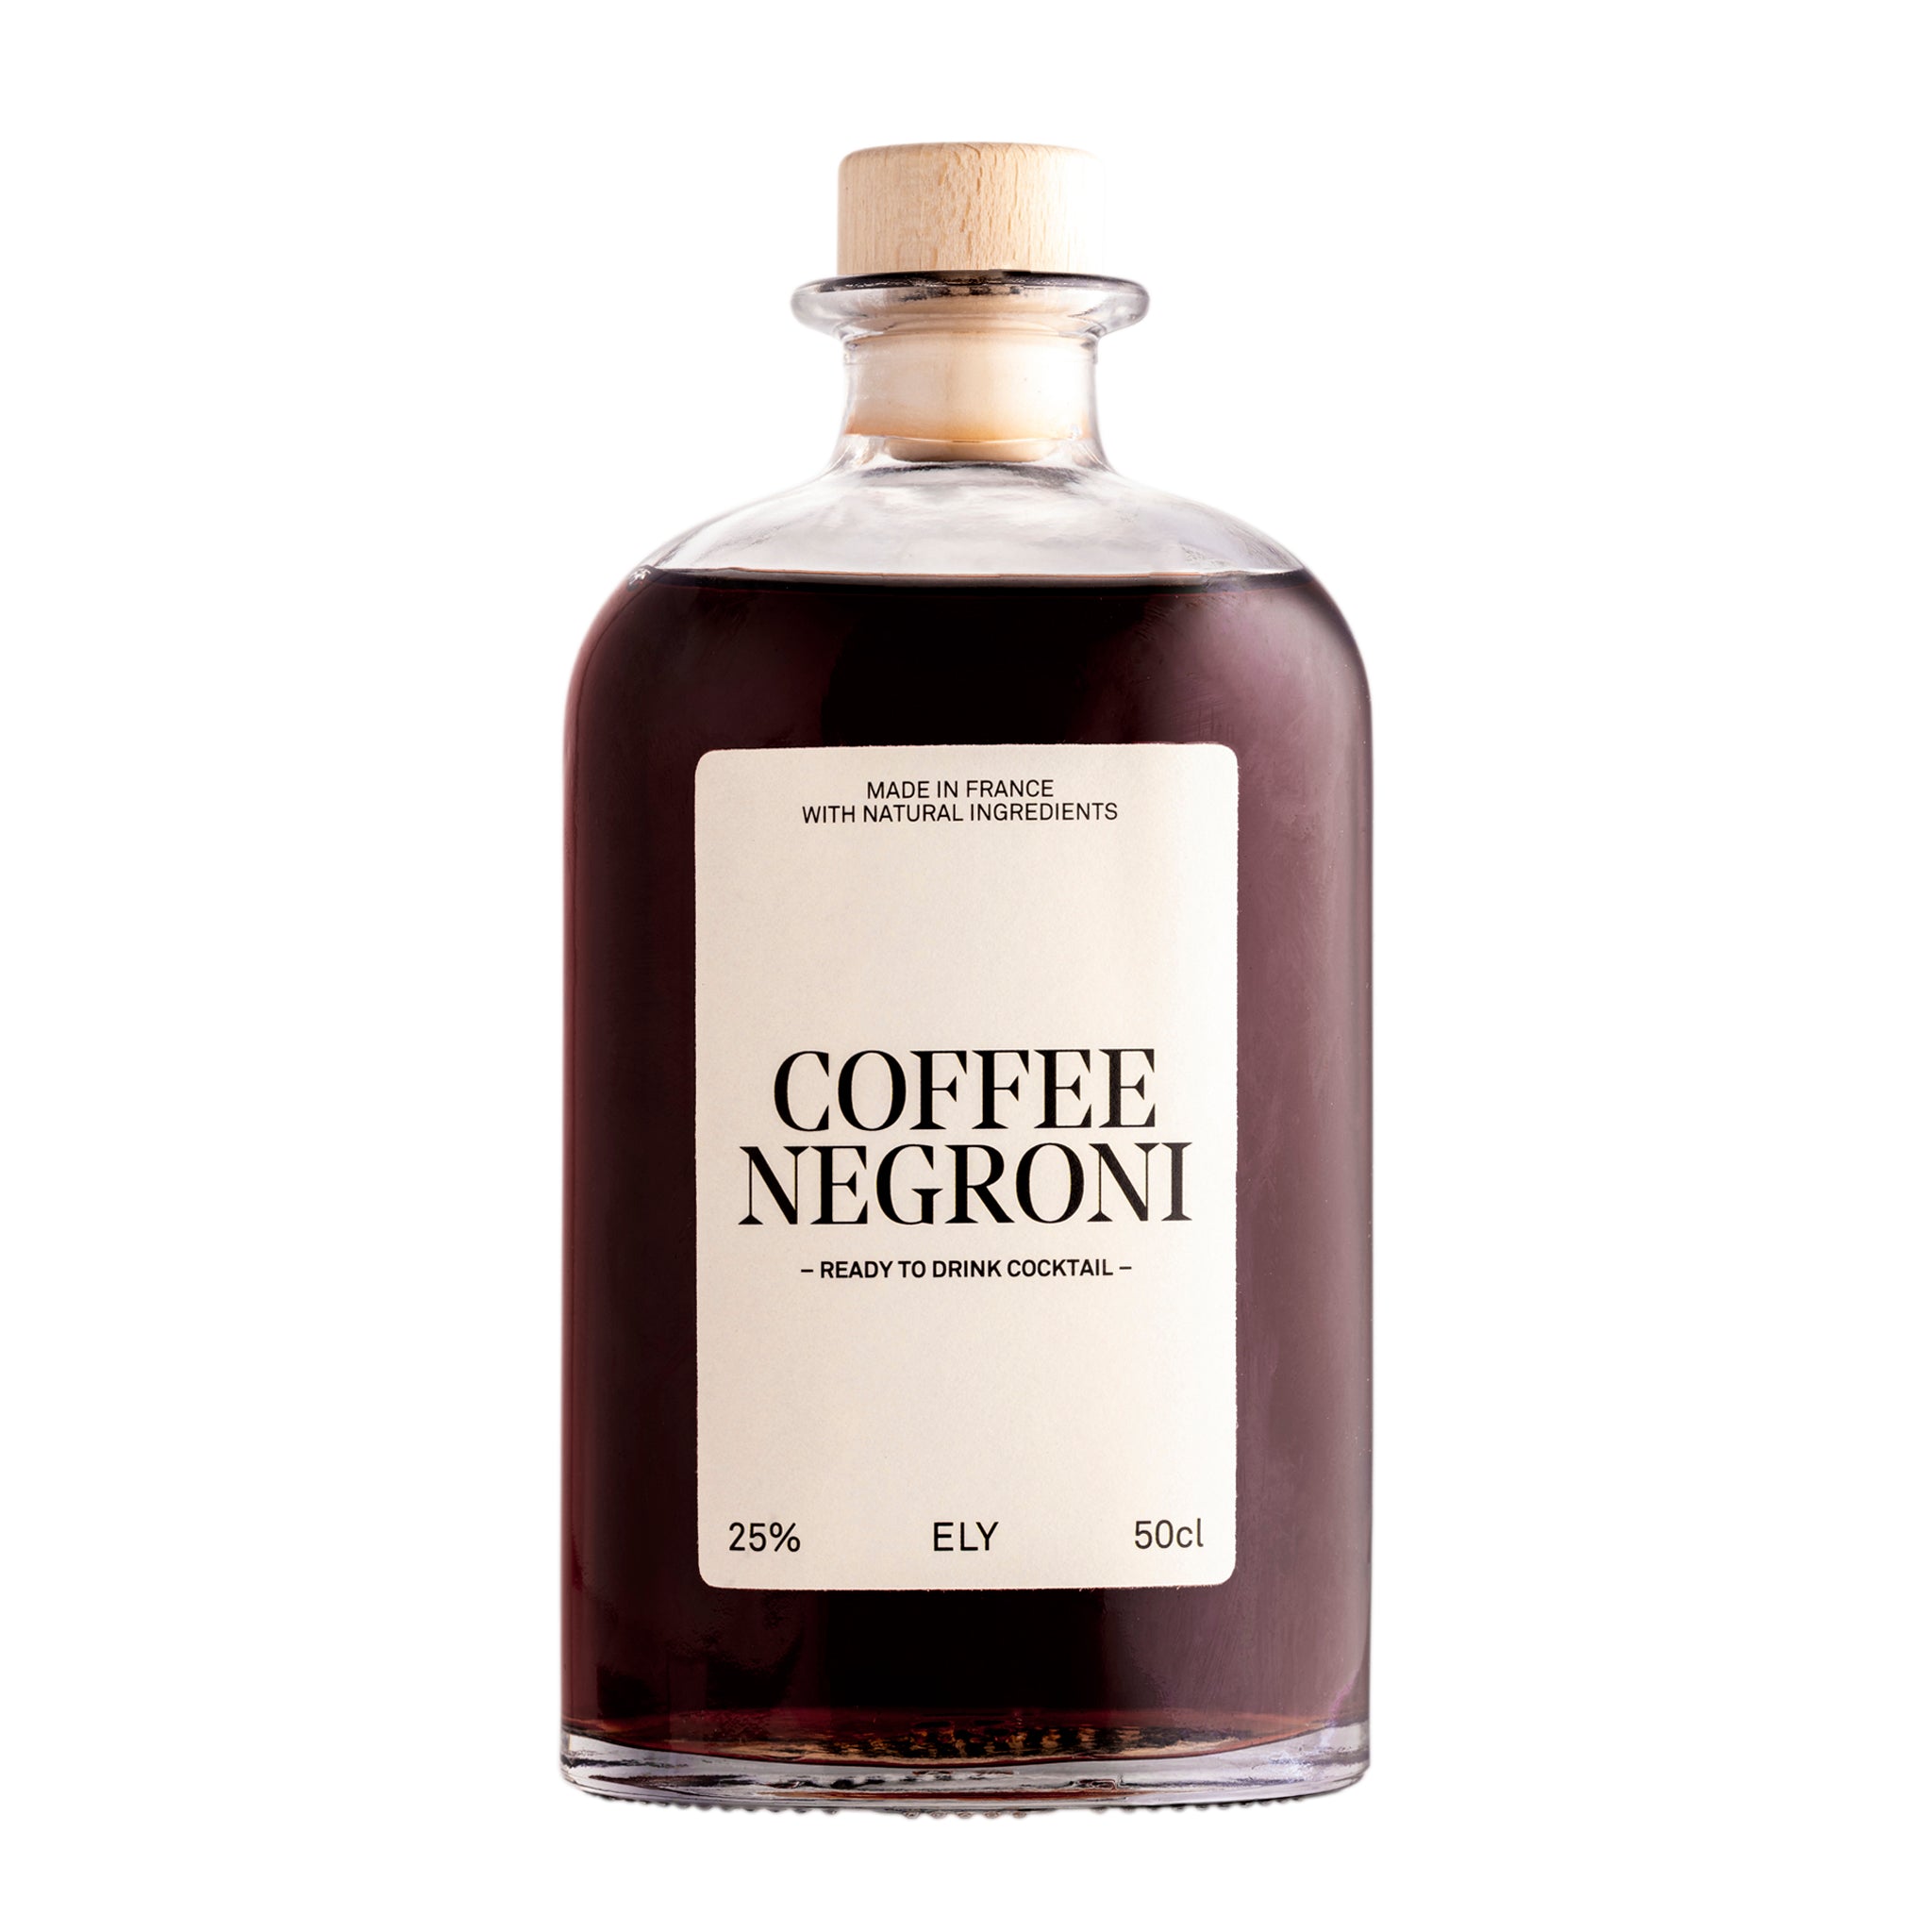 COFFEE NEGRONI